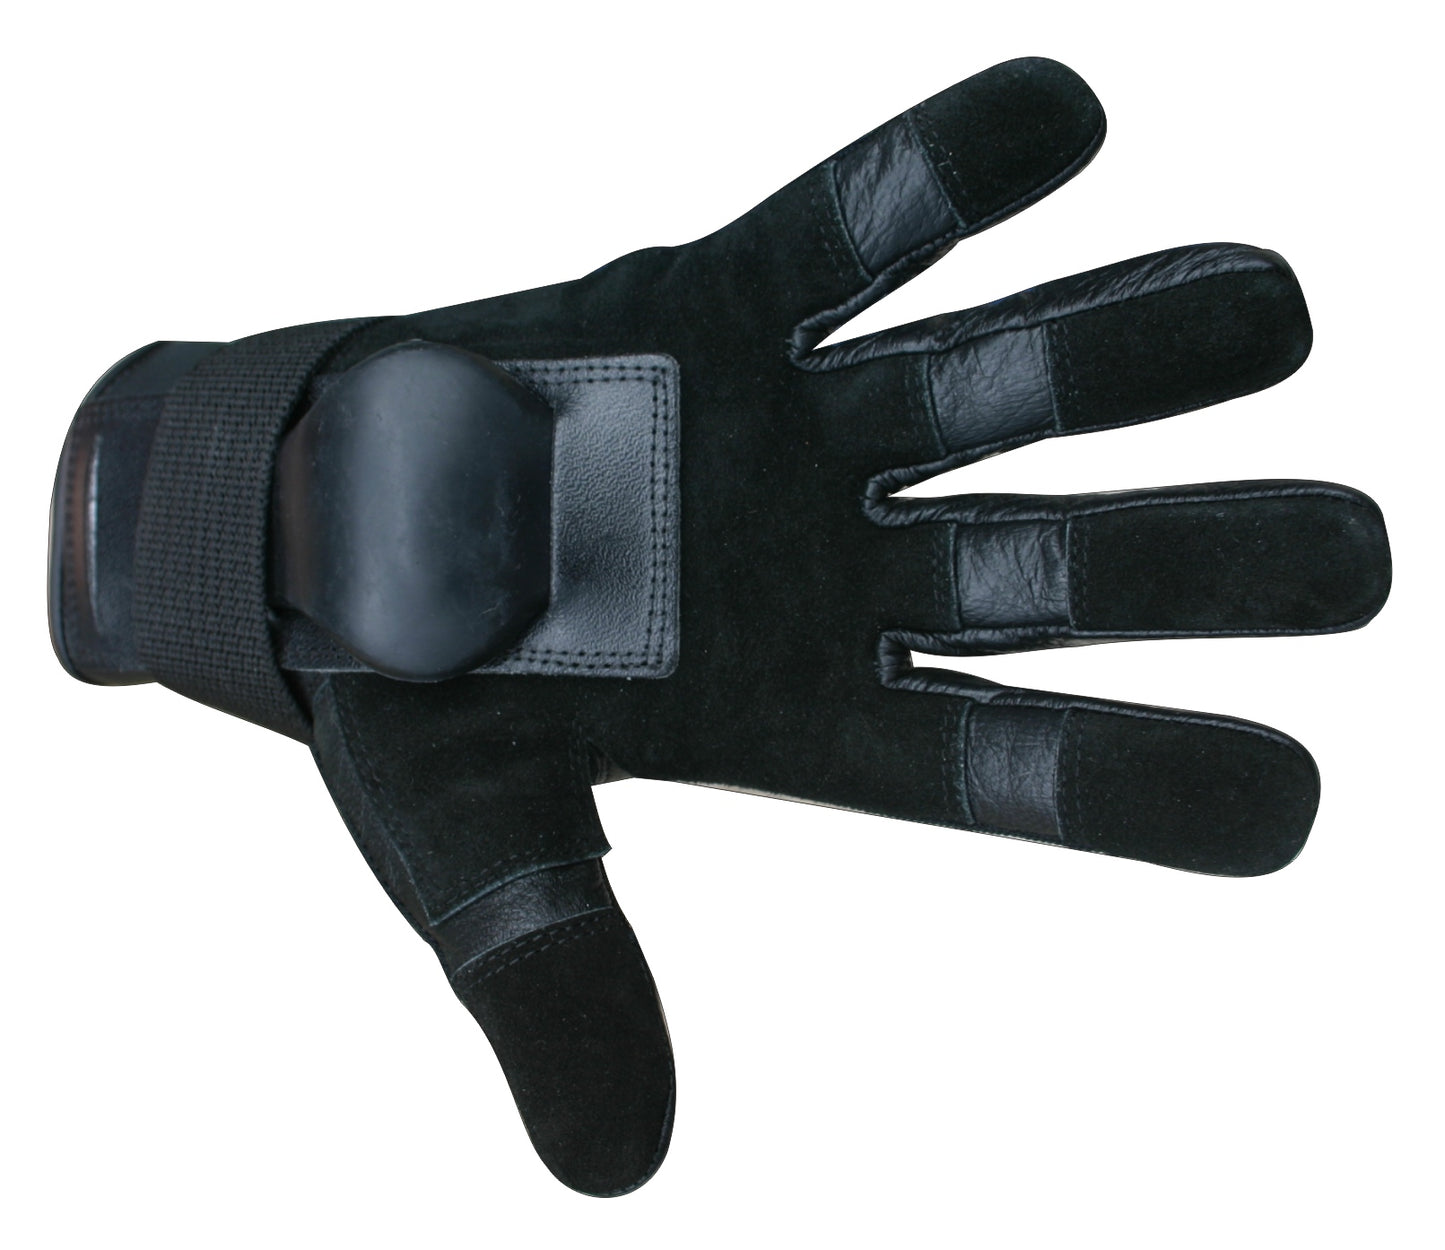 HillBilly Wrist Guard Gloves - Full Finger